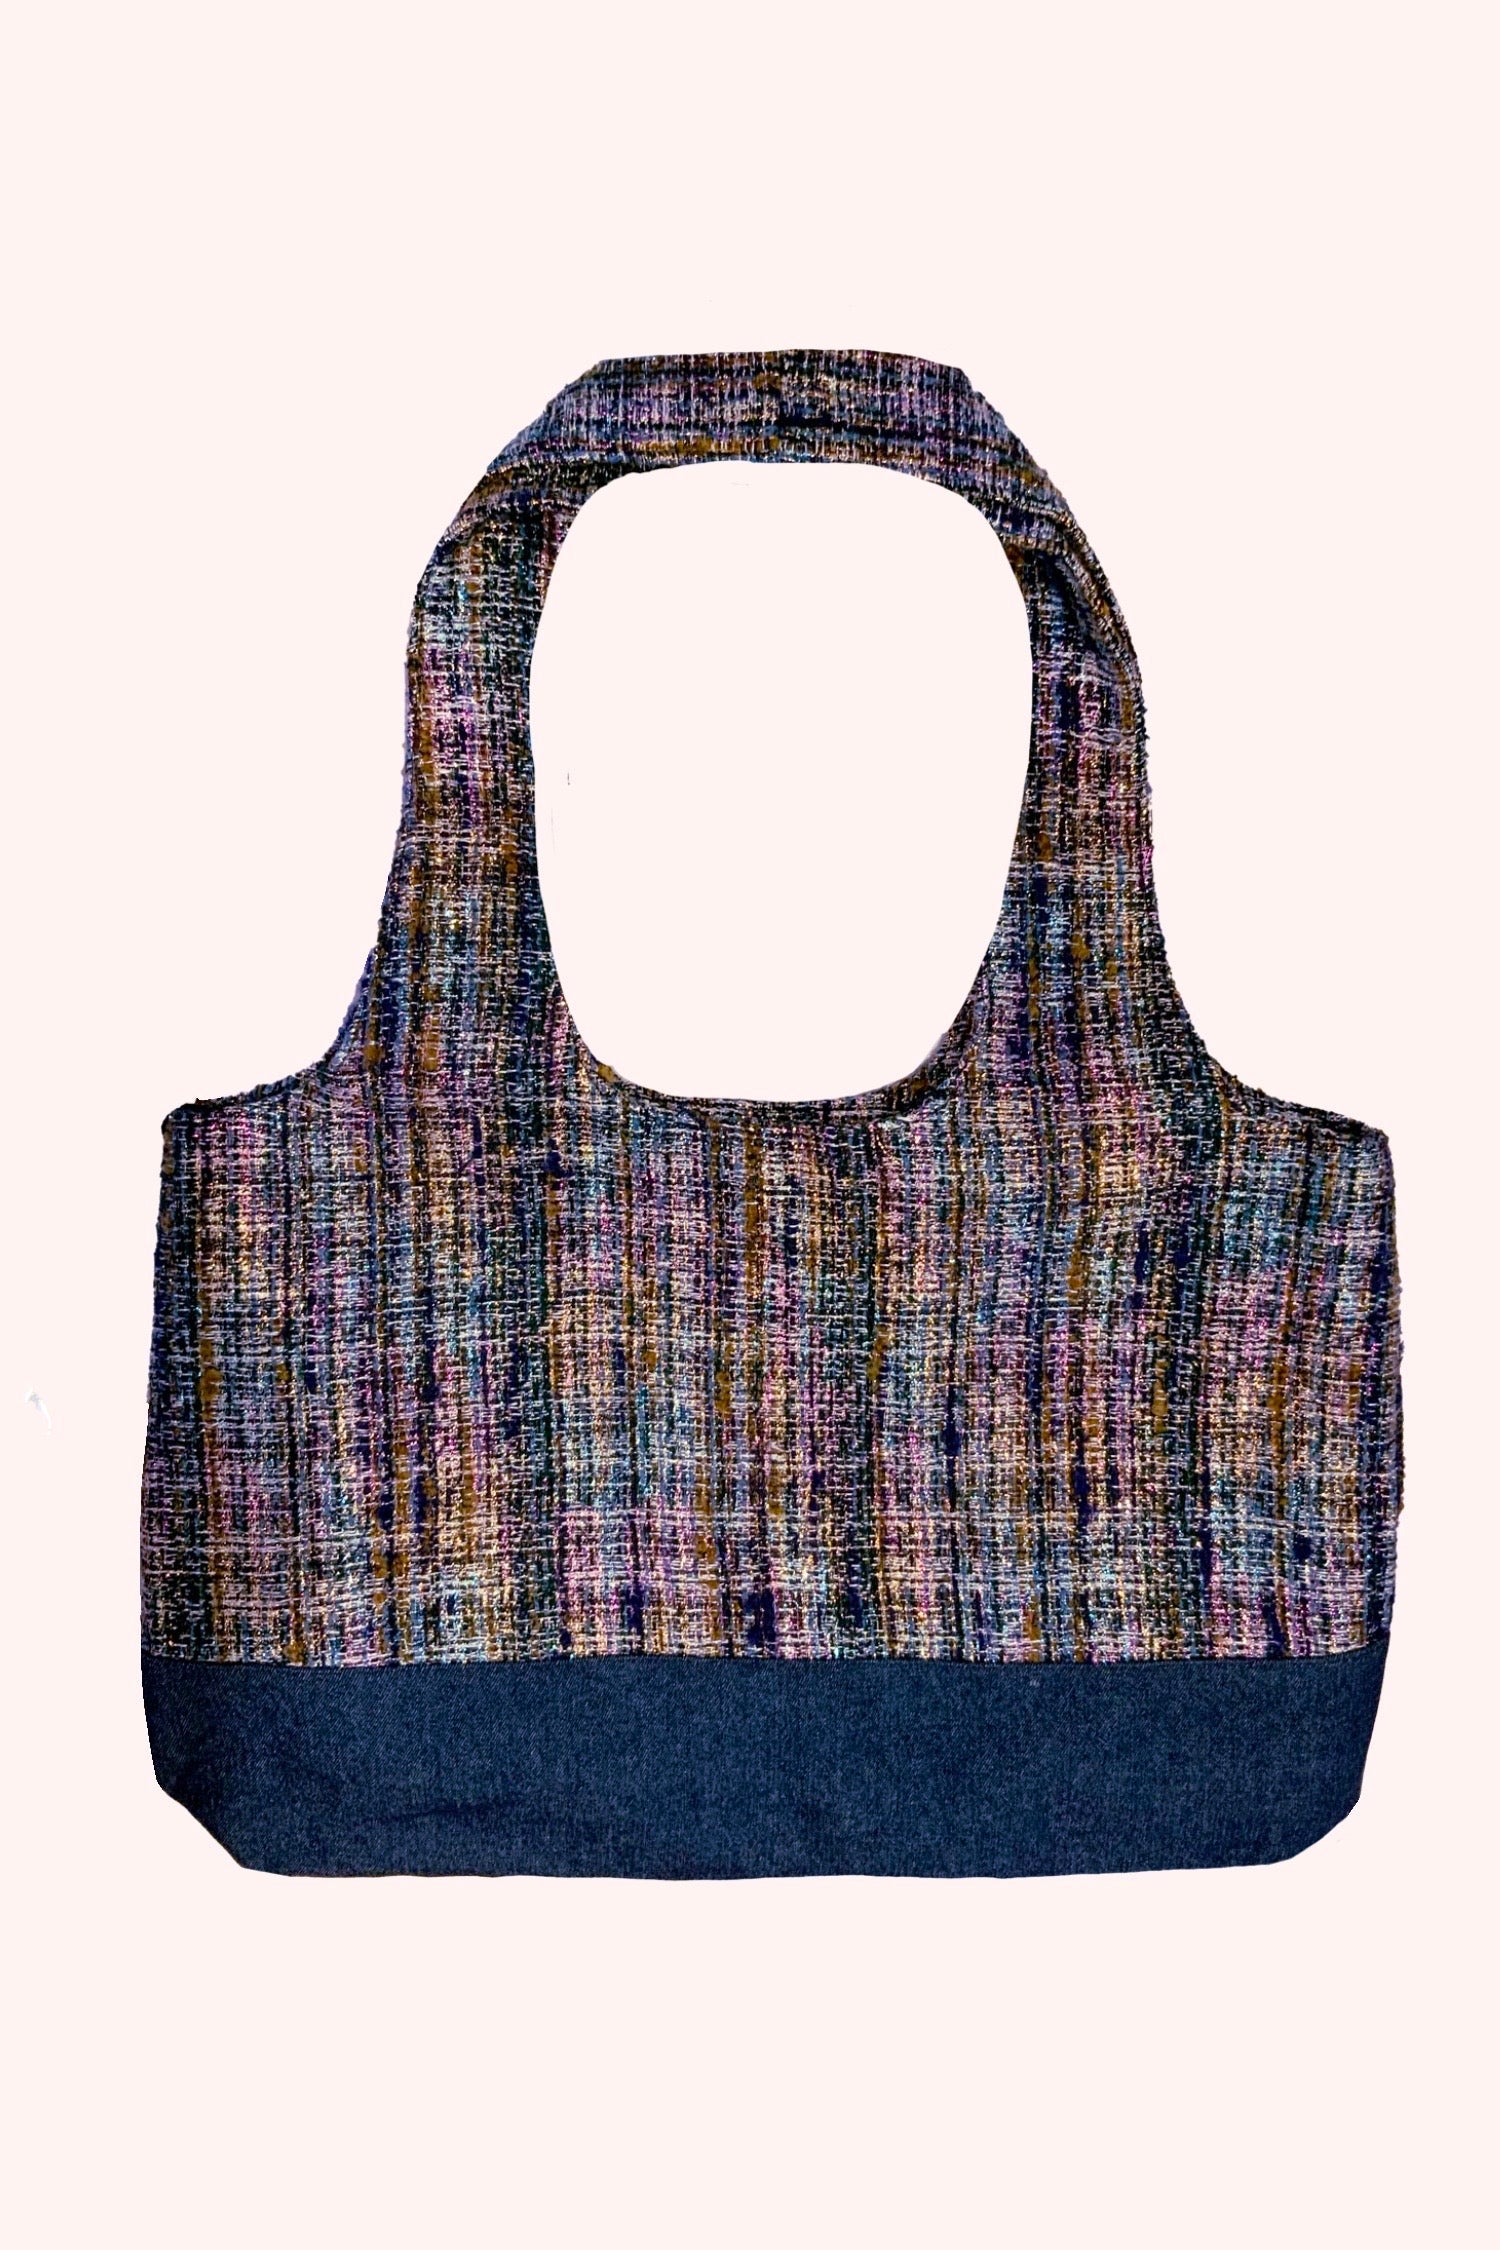 Lurex Tweed & Denim Tote Bag, purplish on top, denim blue at bottom, round handles, rectangle